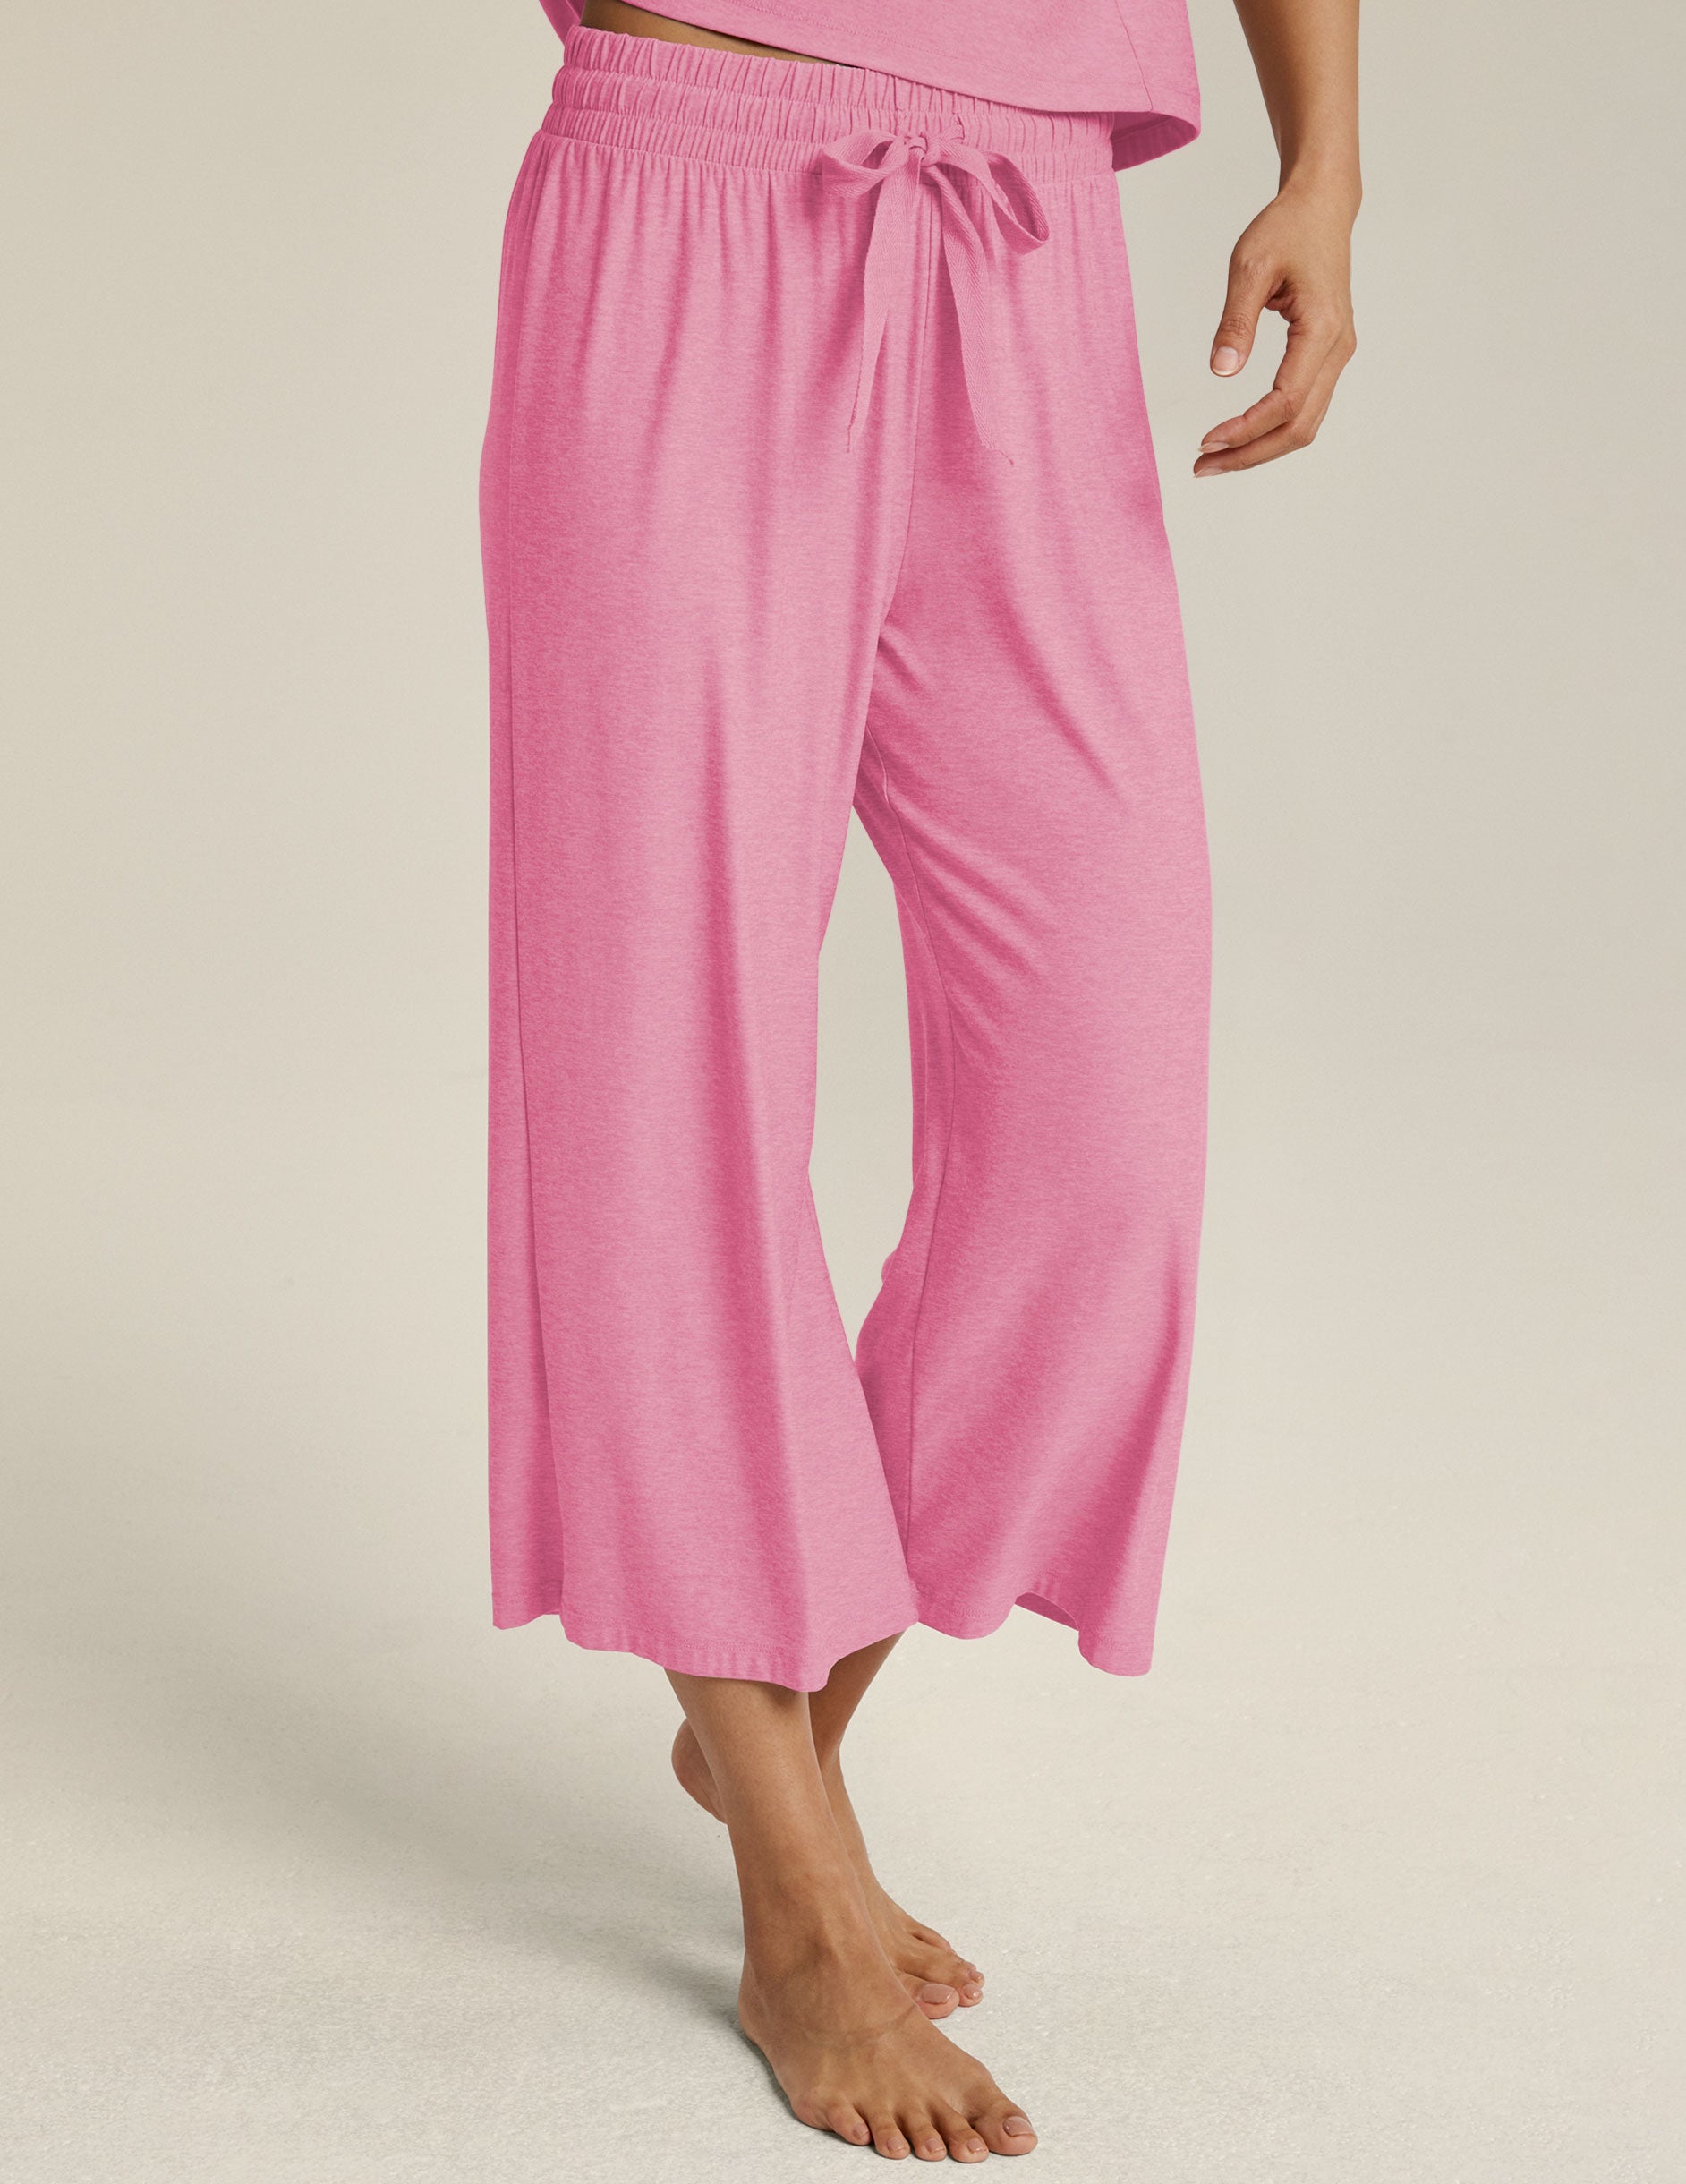 pink capri sleep pants with a ribbon drawstring at waist. 